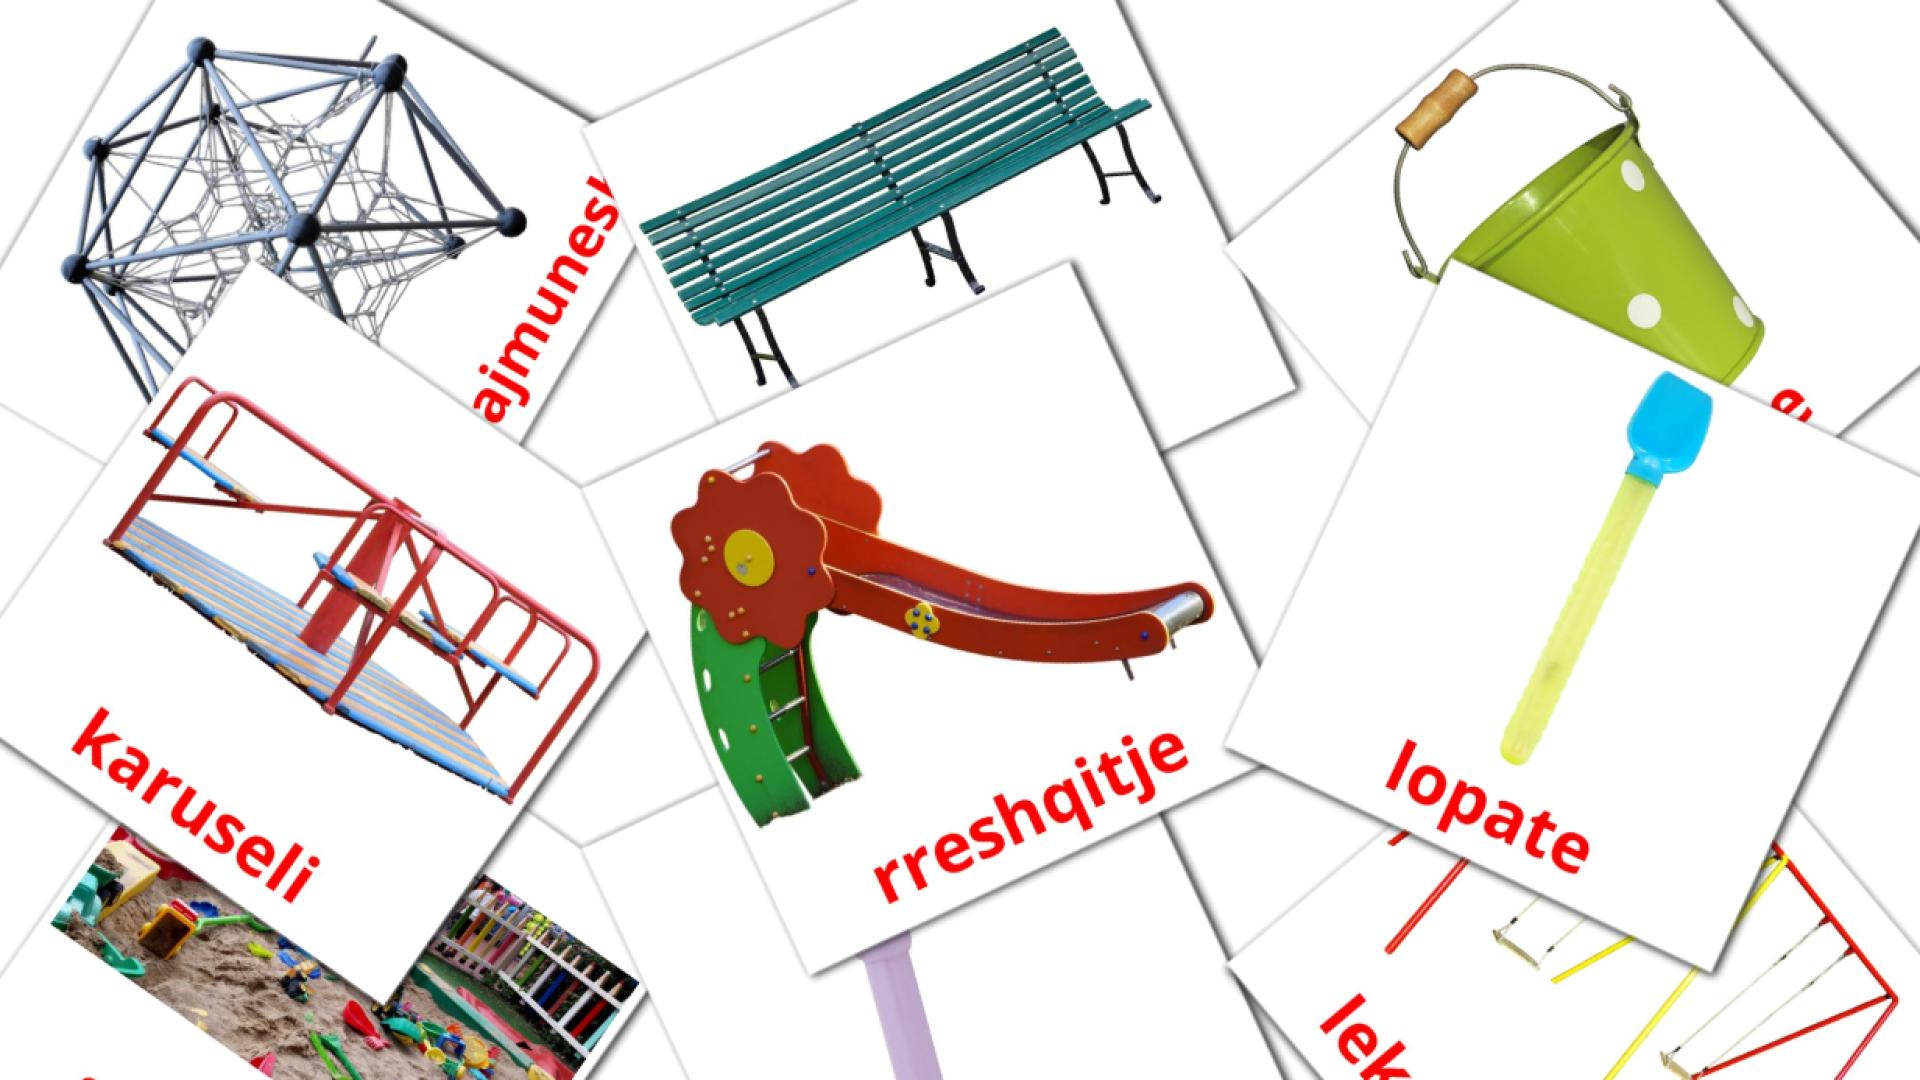 Speelplaats - albanesee woordenschatkaarten